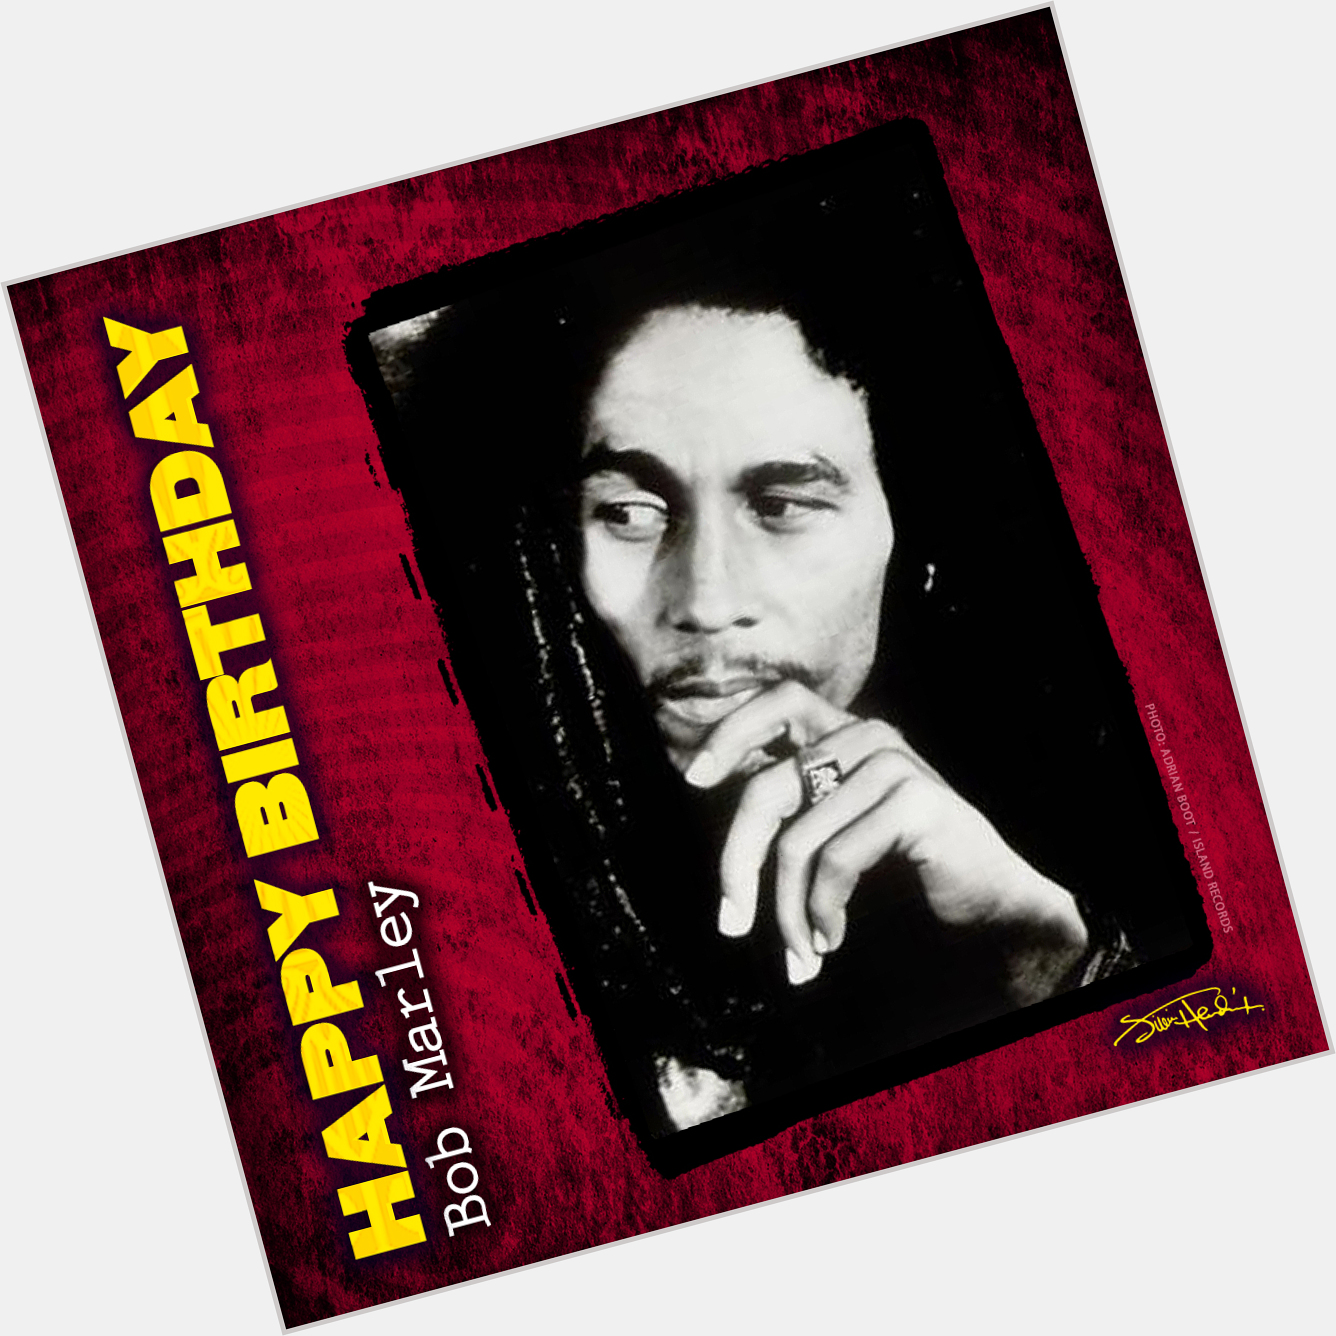 Happy Birthday to Bob Marley
February 6, 1945 - May 11, 1981   